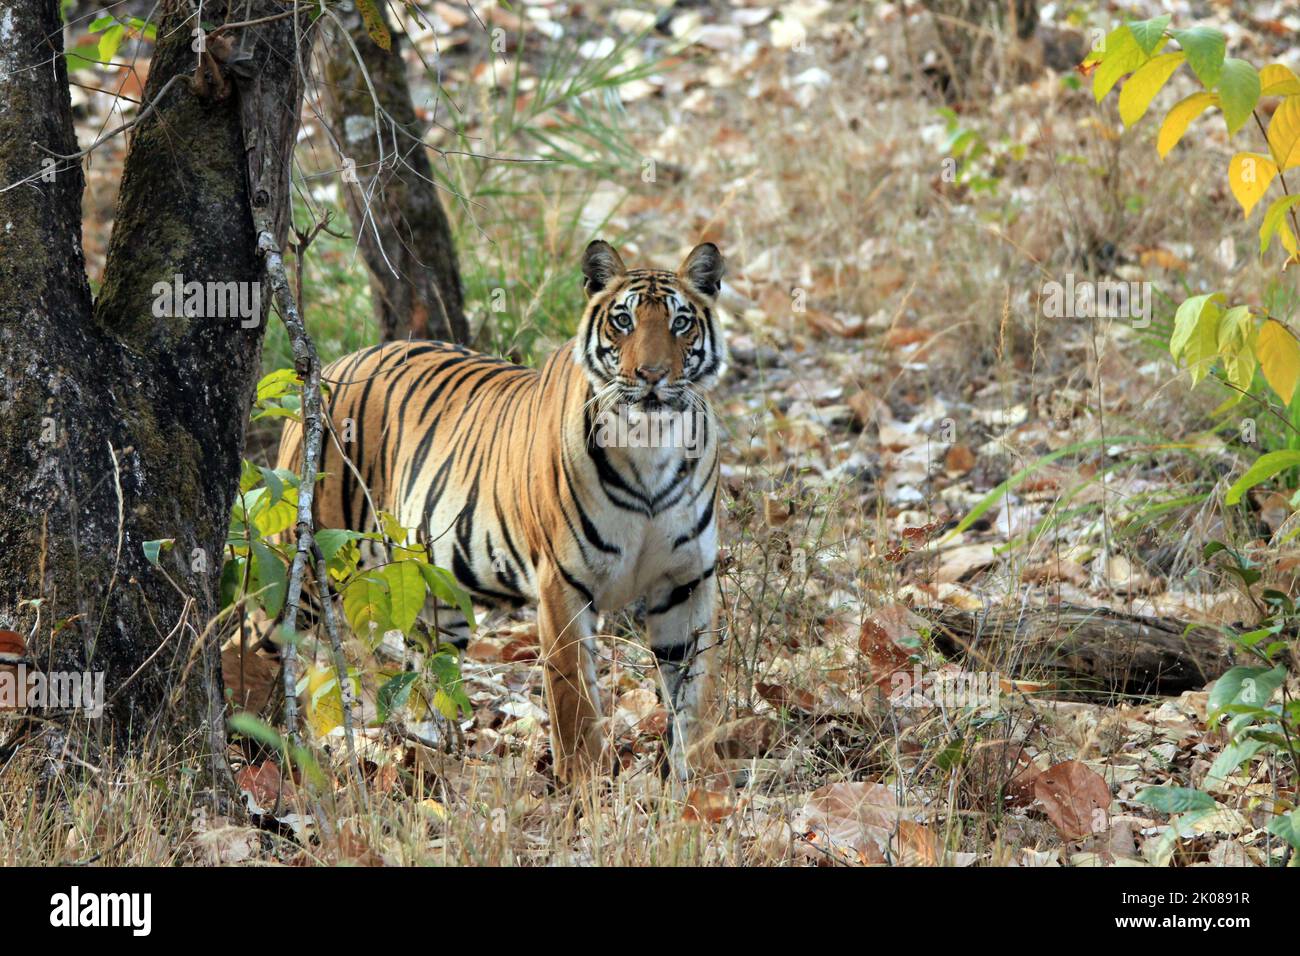 Tigre du Bengale (Panthera tigris tigris) dans la nature, regardant dans la caméra. Bandhavgarh, Inde Banque D'Images